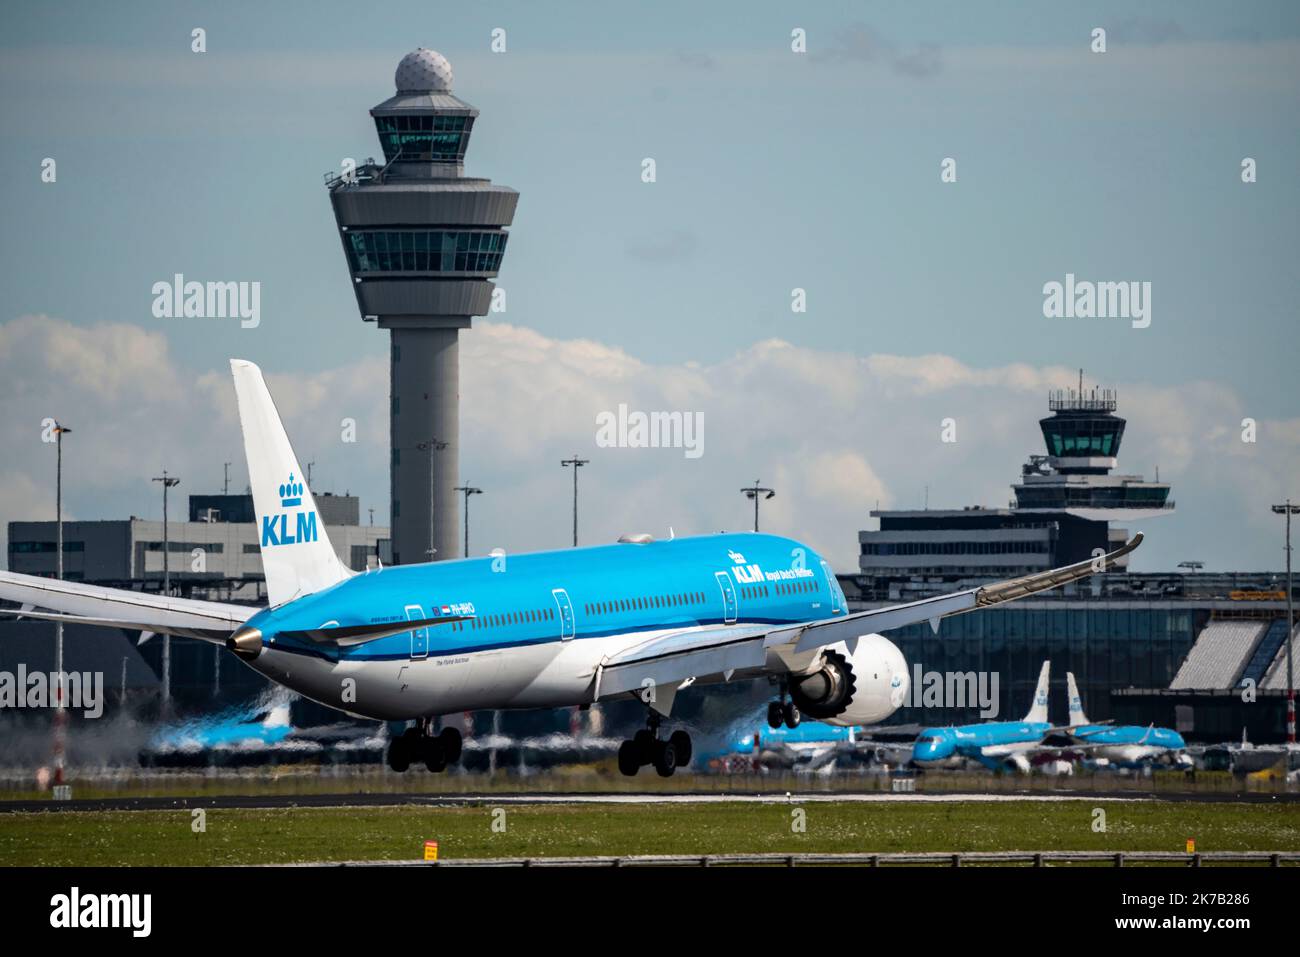 Amsterdam Schiphol Airport, AMS, Flugzeug auf dem Weg nach Kaagbaan, Start- und Landebahn, Terminalgebäude, Flugsicherungsturm, PH-BHO, KLM Royal Dutch Airli Stockfoto